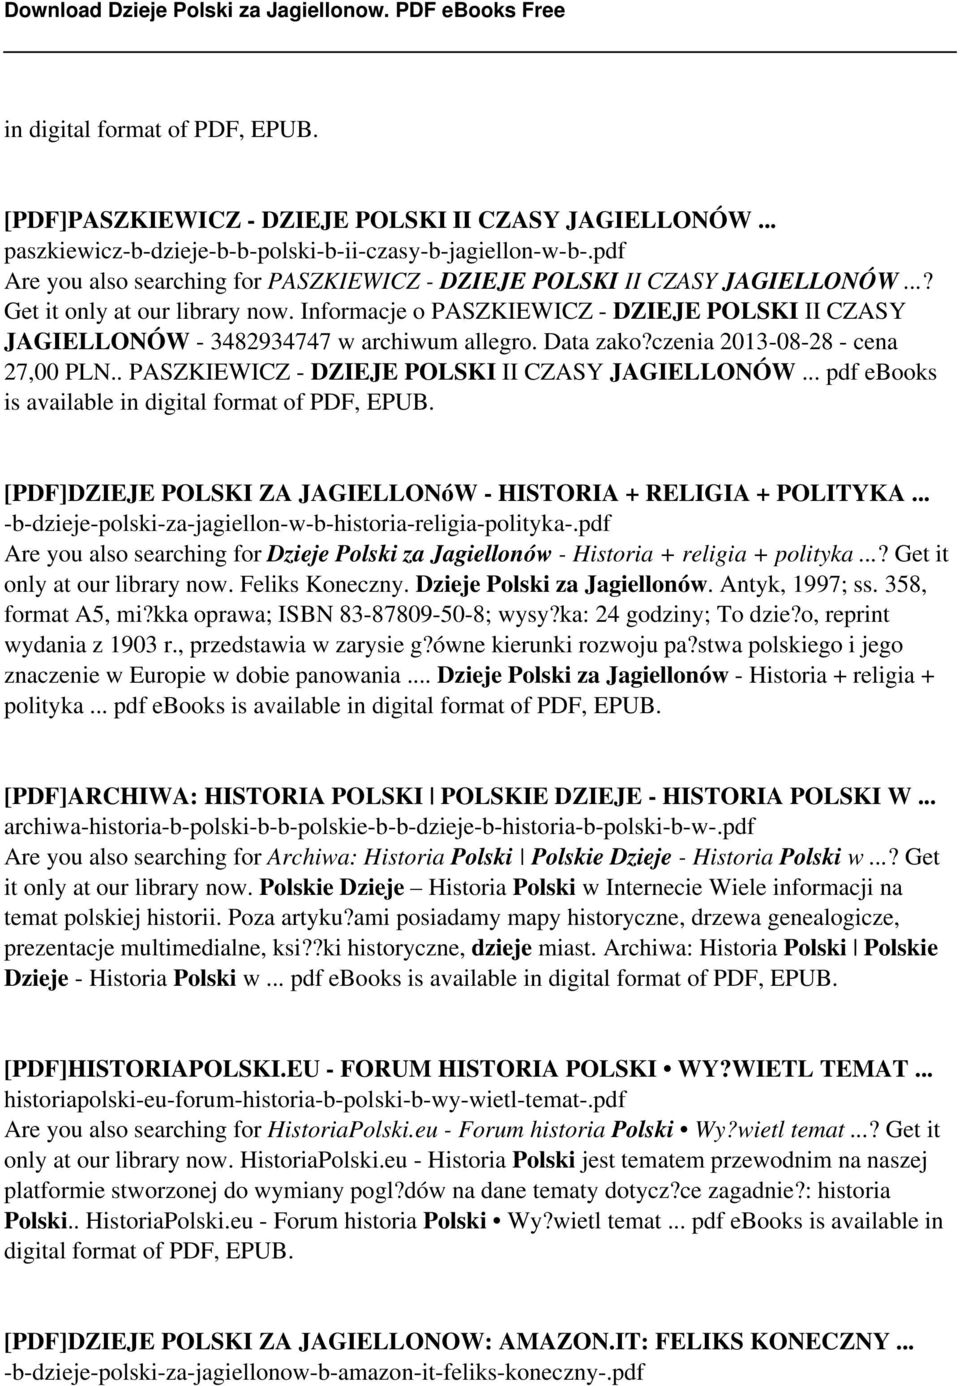 Informacje o PASZKIEWICZ - DZIEJE POLSKI II CZASY JAGIELLONÓW - 3482934747 w archiwum allegro. Data zako?czenia 2013-08-28 - cena 27,00 PLN.. PASZKIEWICZ - DZIEJE POLSKI II CZASY JAGIELLONÓW... pdf ebooks is available in digital format of PDF, EPUB.